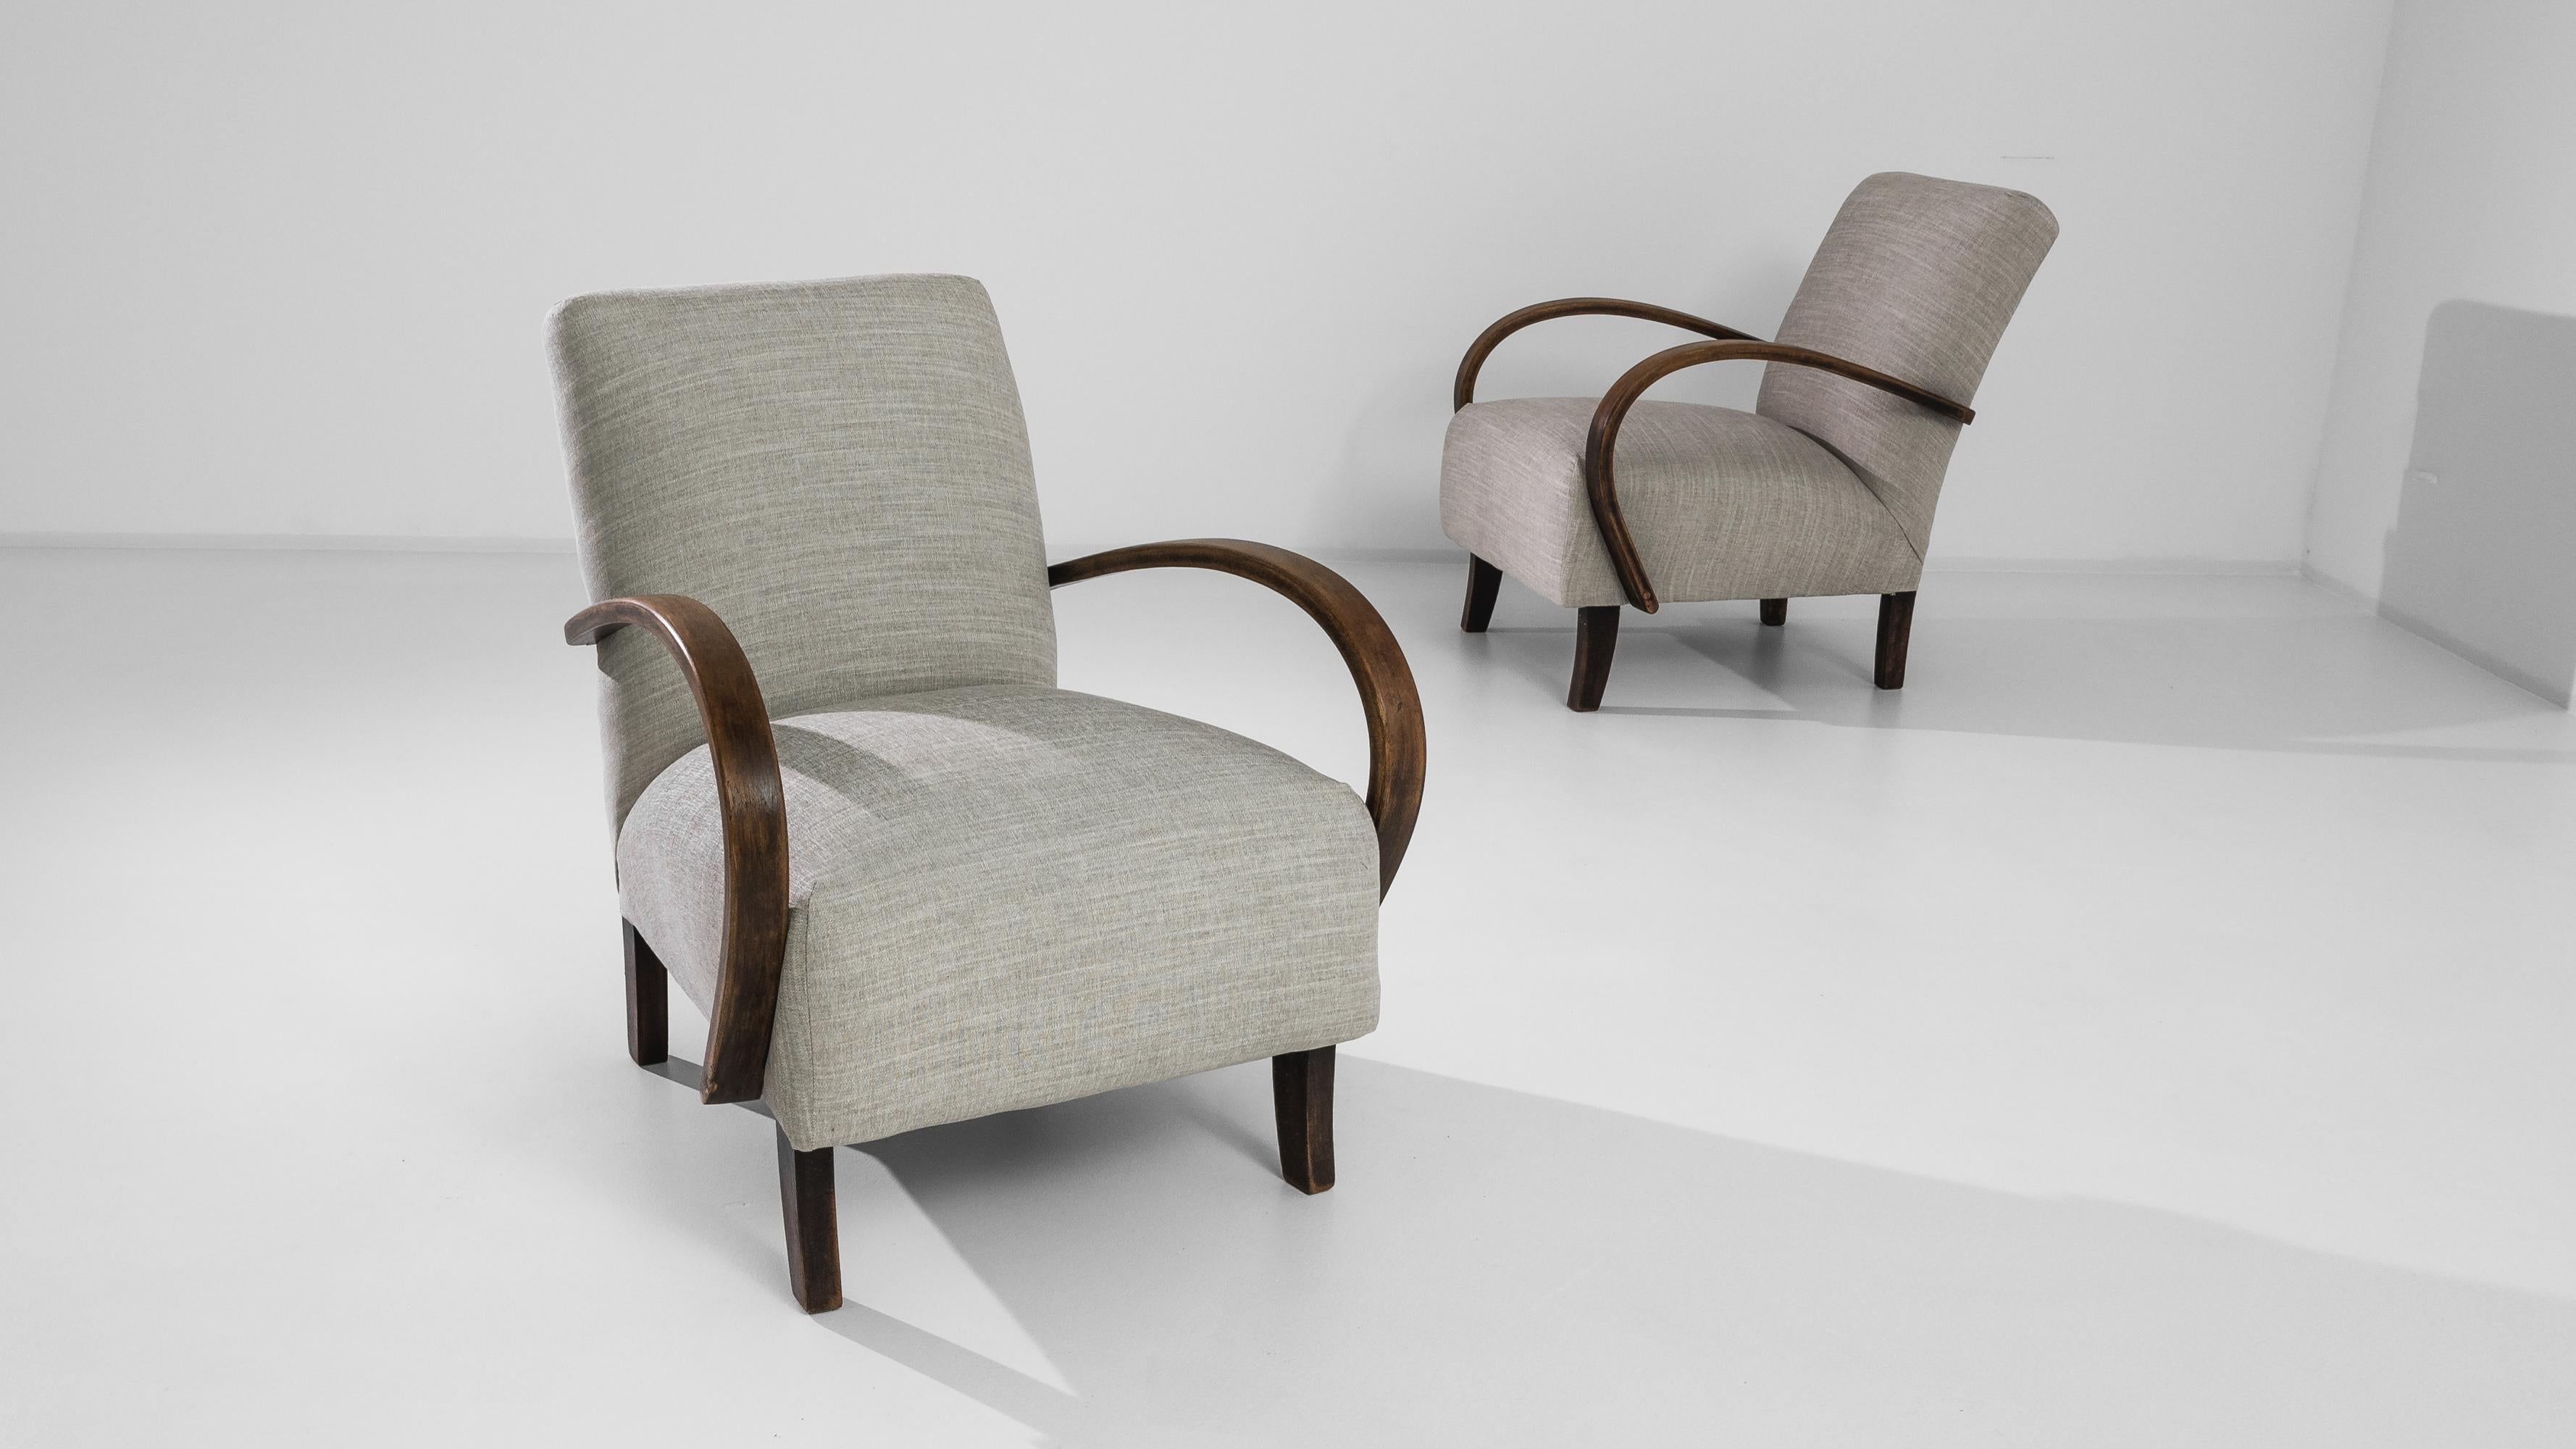 Ein Paar Sessel des tschechischen Möbeldesigners J. Halabala. In den 1950er Jahren wurden in mitteleuropäischen Möbelfabriken in der Mitte des 20. Jahrhunderts charakteristische Bugholzmöbel hergestellt. Die auffällige Silhouette und die bequeme